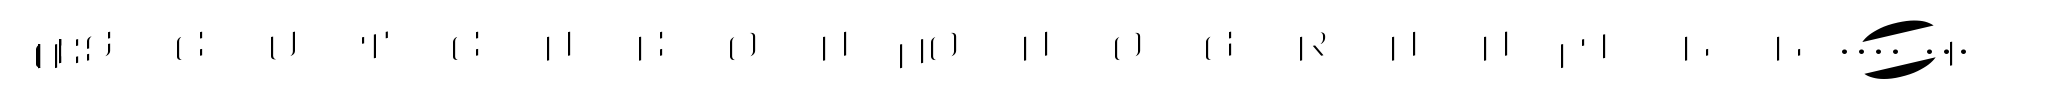 MFC Escutcheon Monogram Fill (1000 Impressions) image